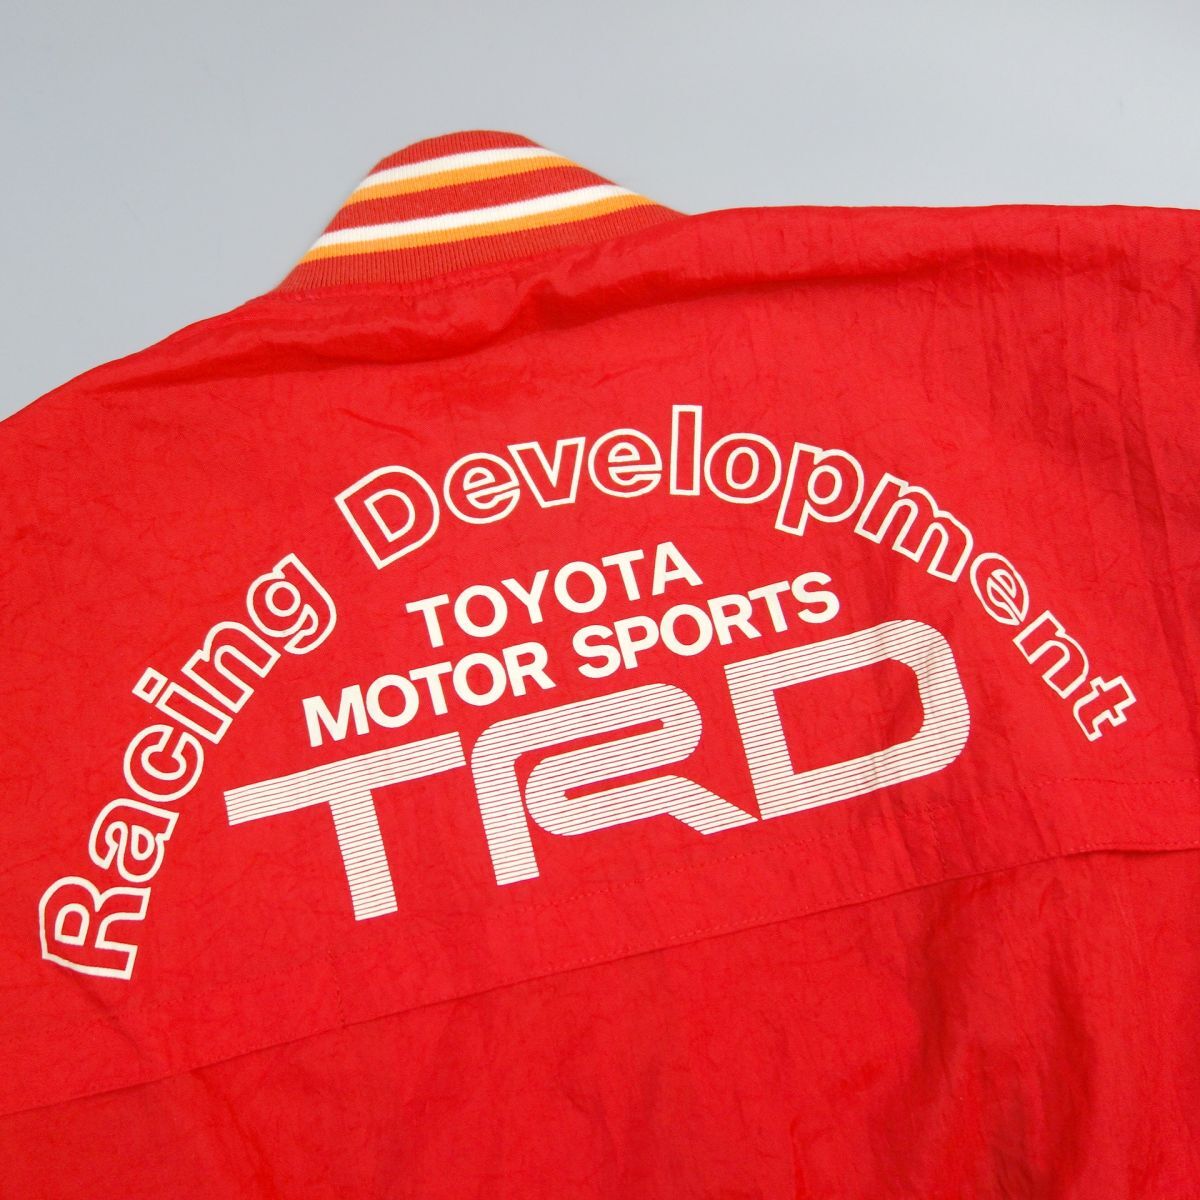  превосходный товар TOYOTA MOTOR SPORTSRacing Development TRD Toyota Motor Sport рейсинг нейлон блузон жакет M мужской 